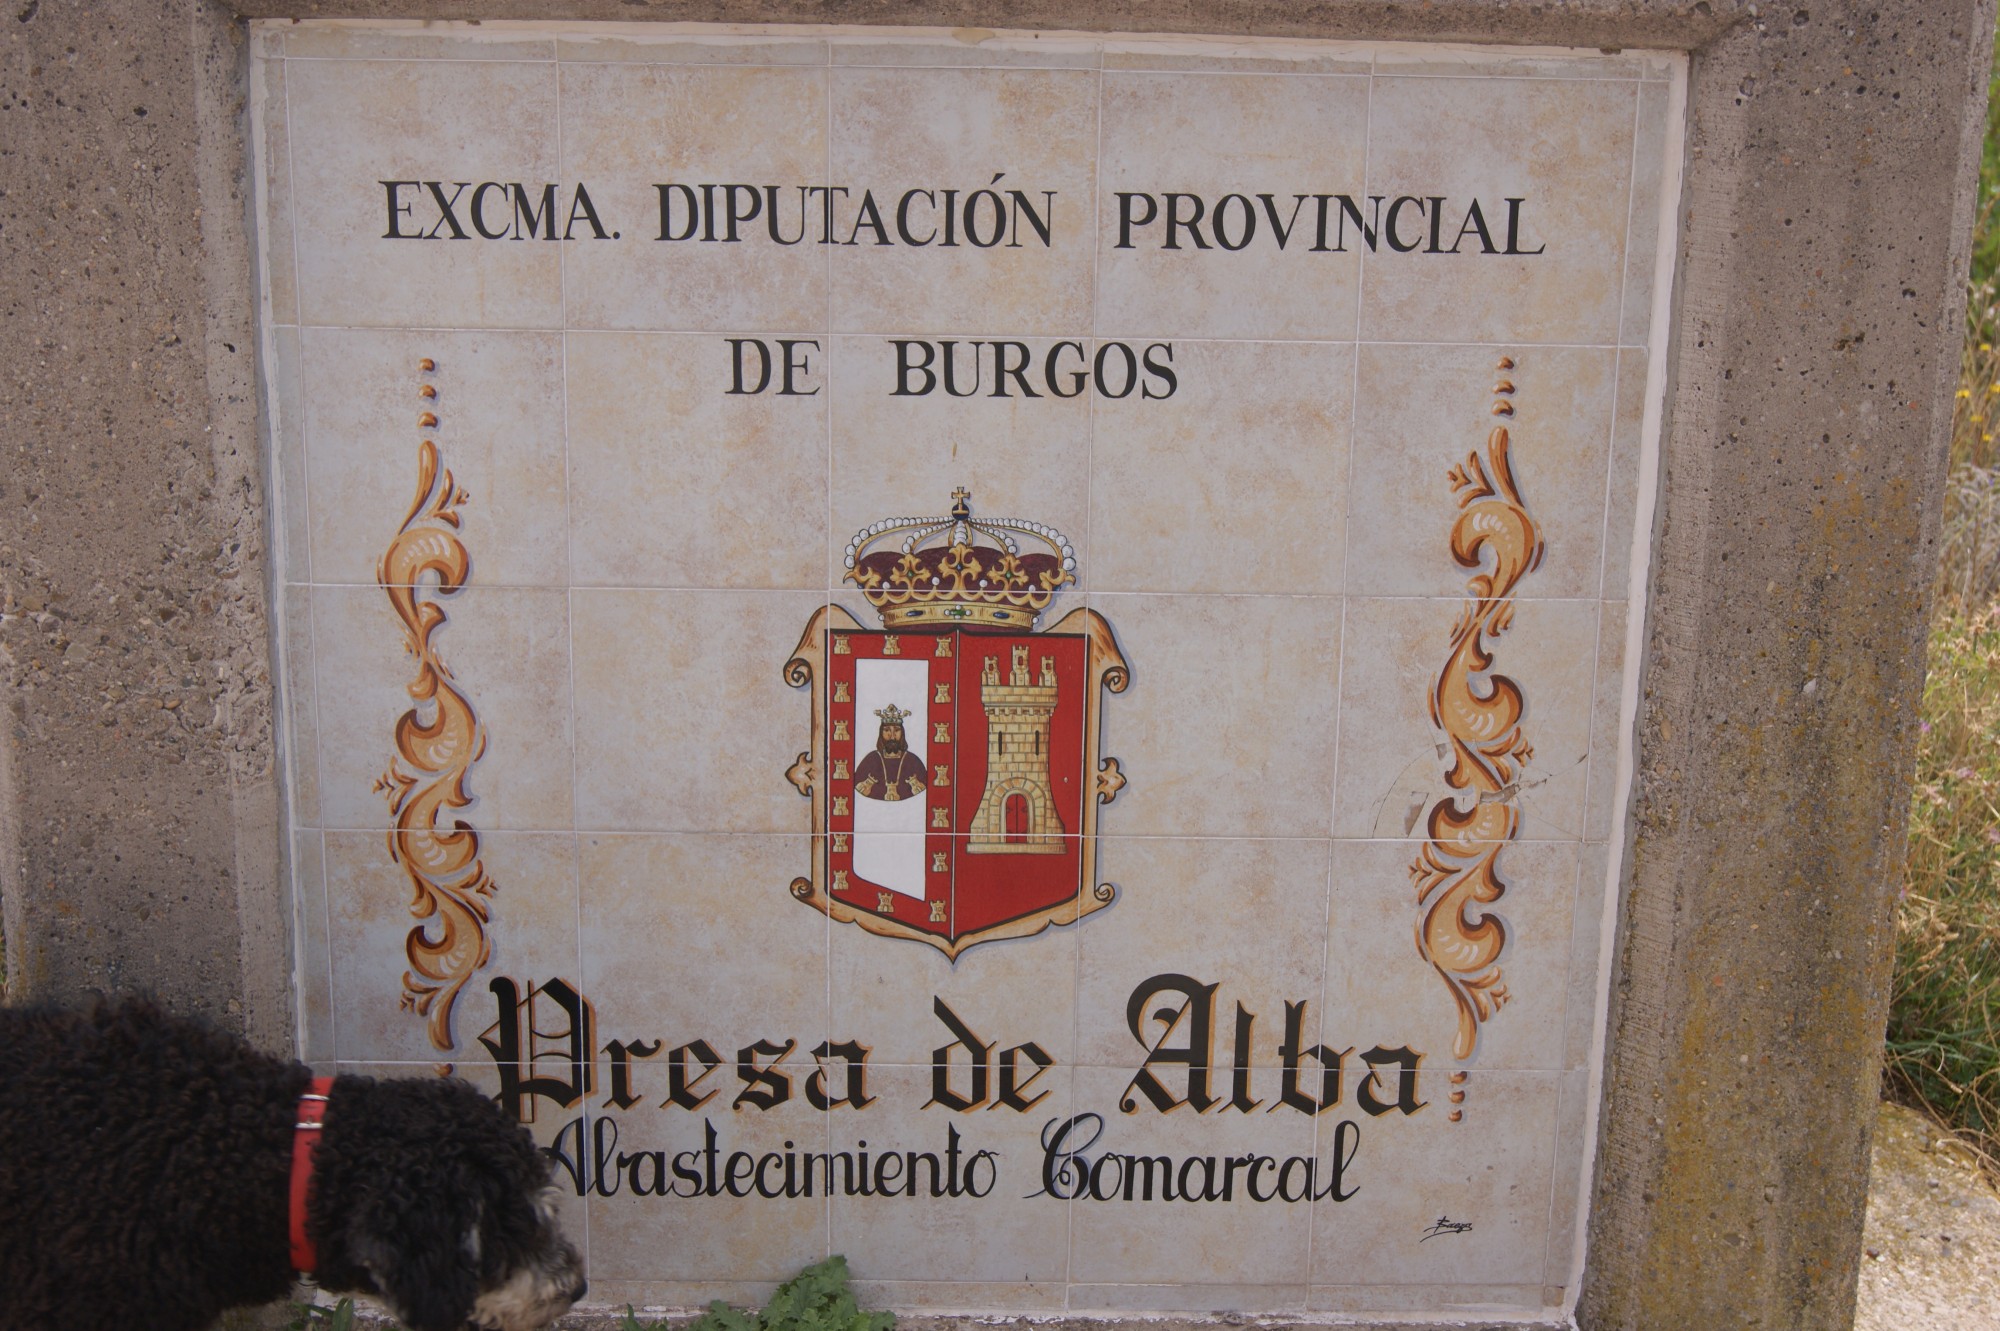 Foto: Presa de Alba - Villasur de Herreros (Cantabria), España